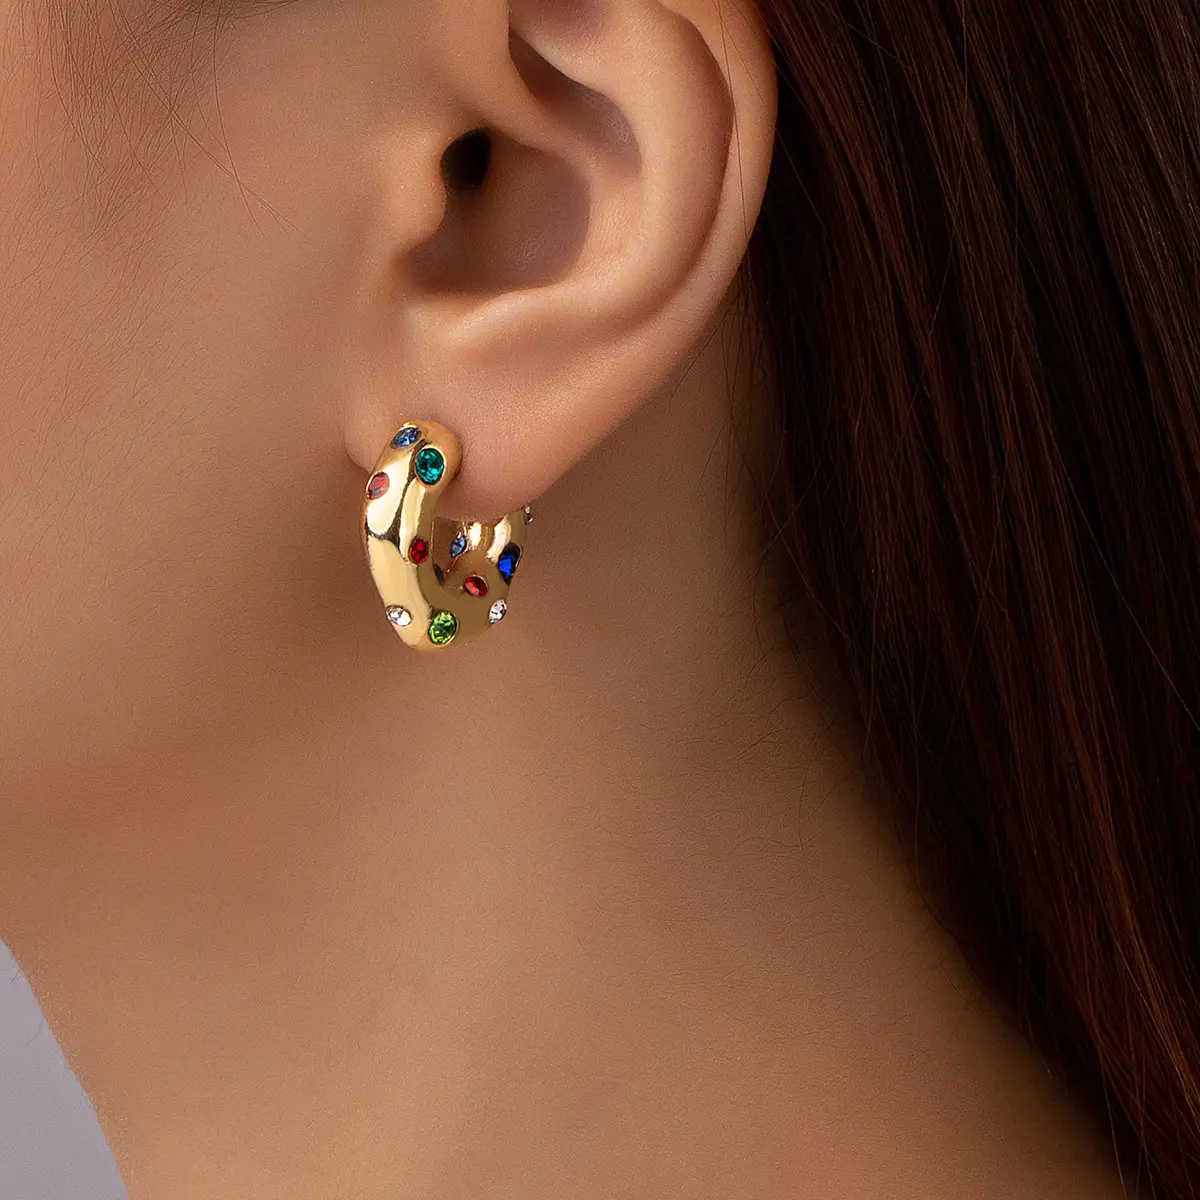 Geili Boucle d'oreille en acier inoxydable plaqué or 18 carats Boucle d'oreille en zircone cubique colorée Boucle d'oreille en forme de zircon épais et brillant